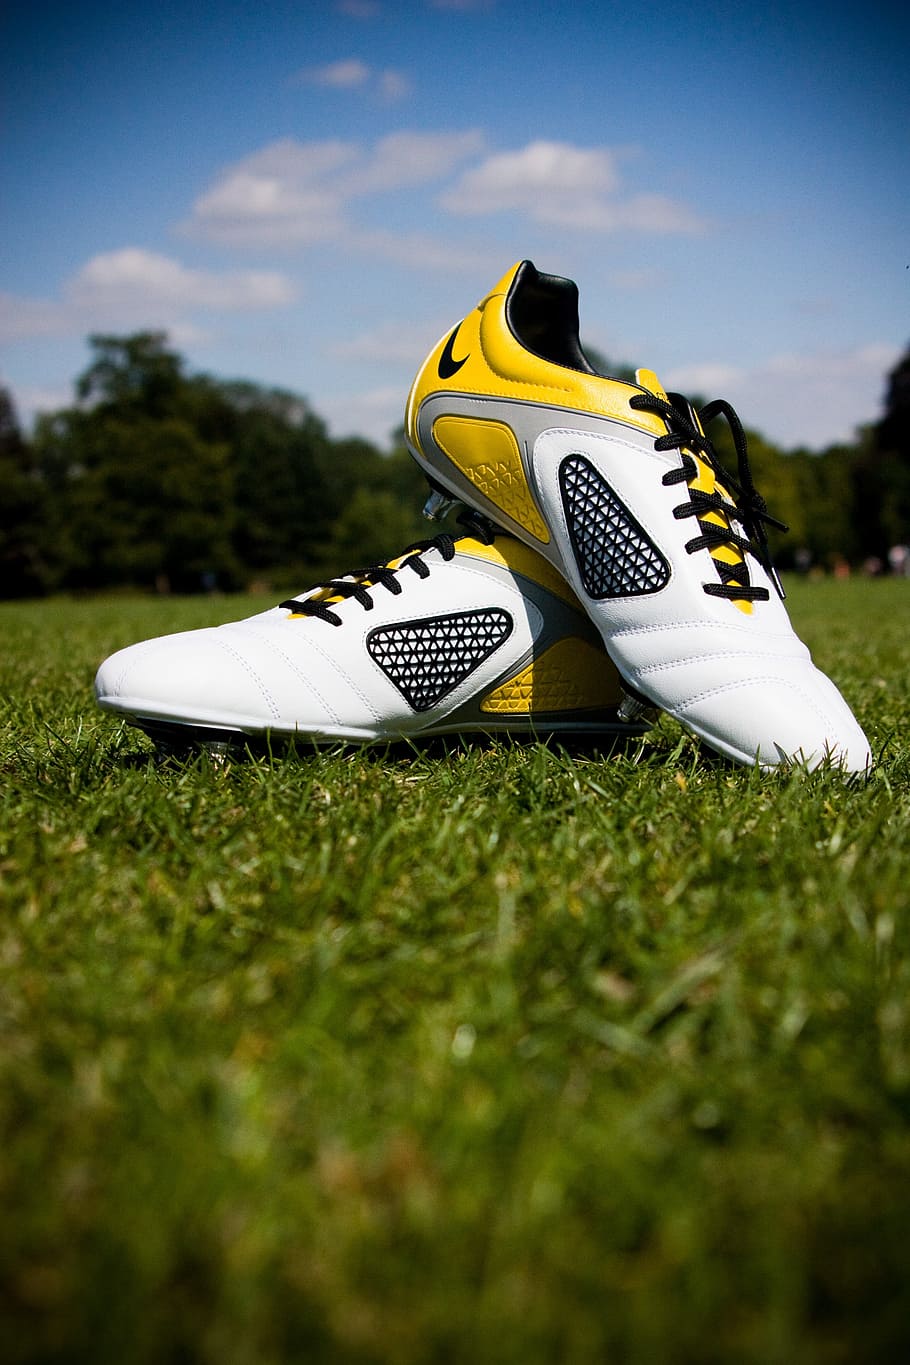 par, botines de fútbol nike blanco y amarillo, campo, durante el día, fútbol, ​​botas, zapatos, deporte, césped, parque